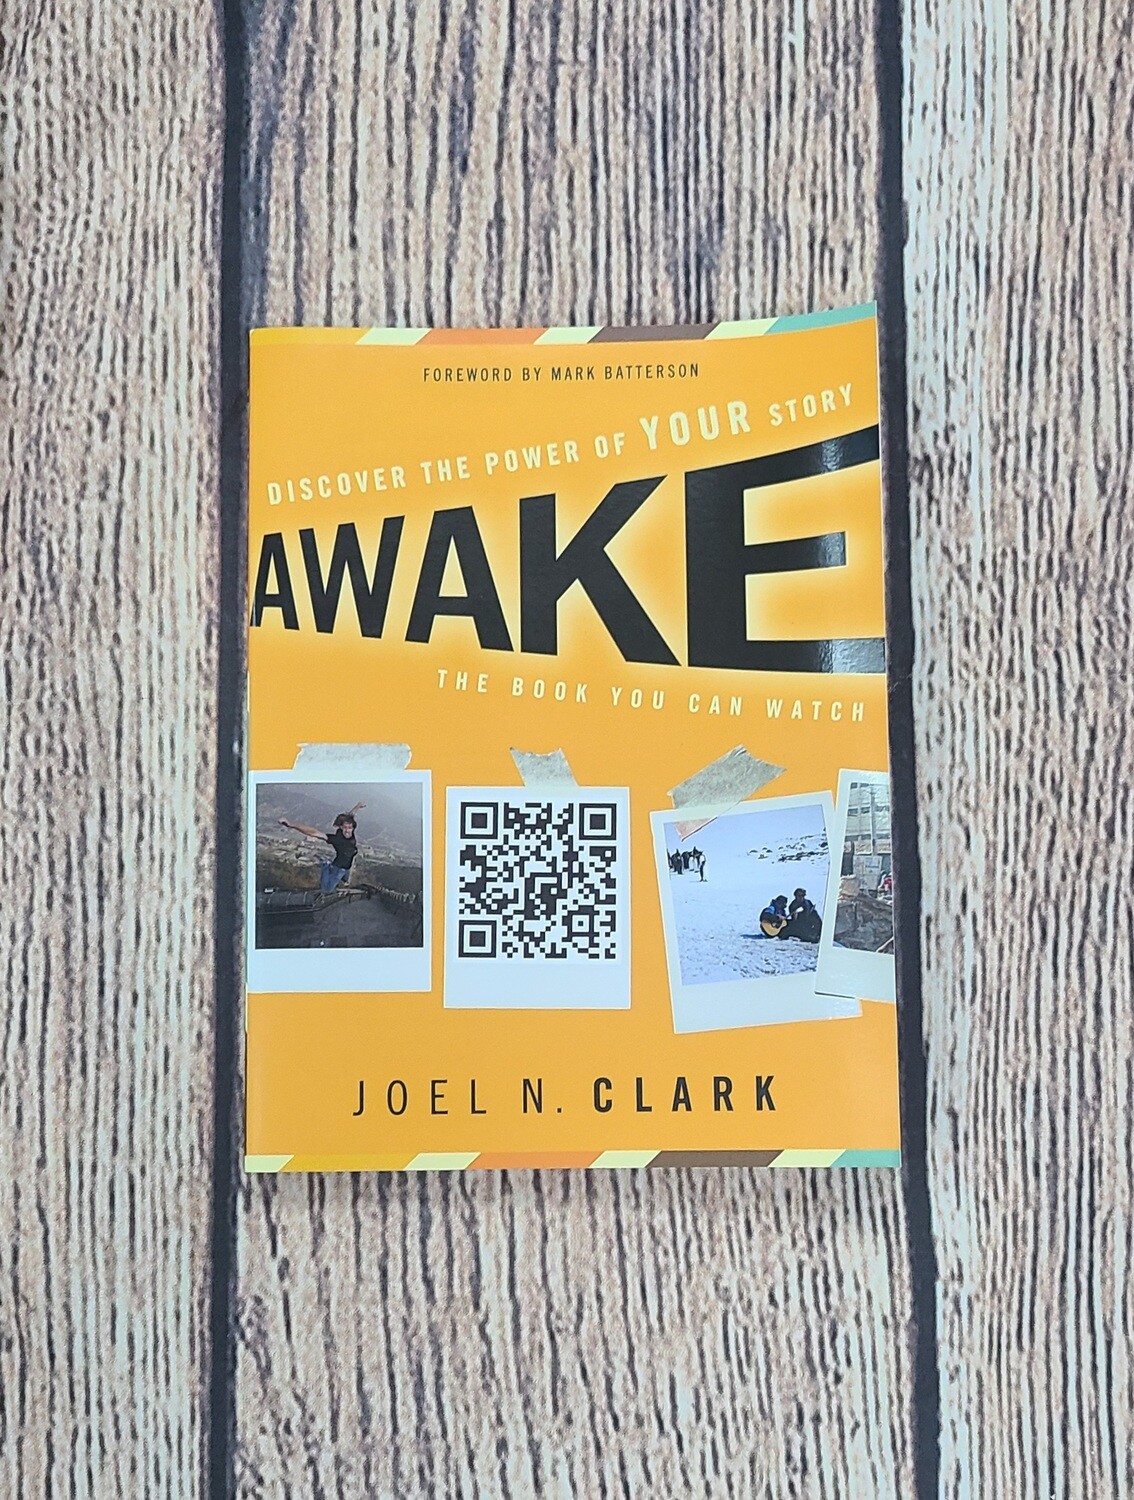 Awake by Joel N. Clark